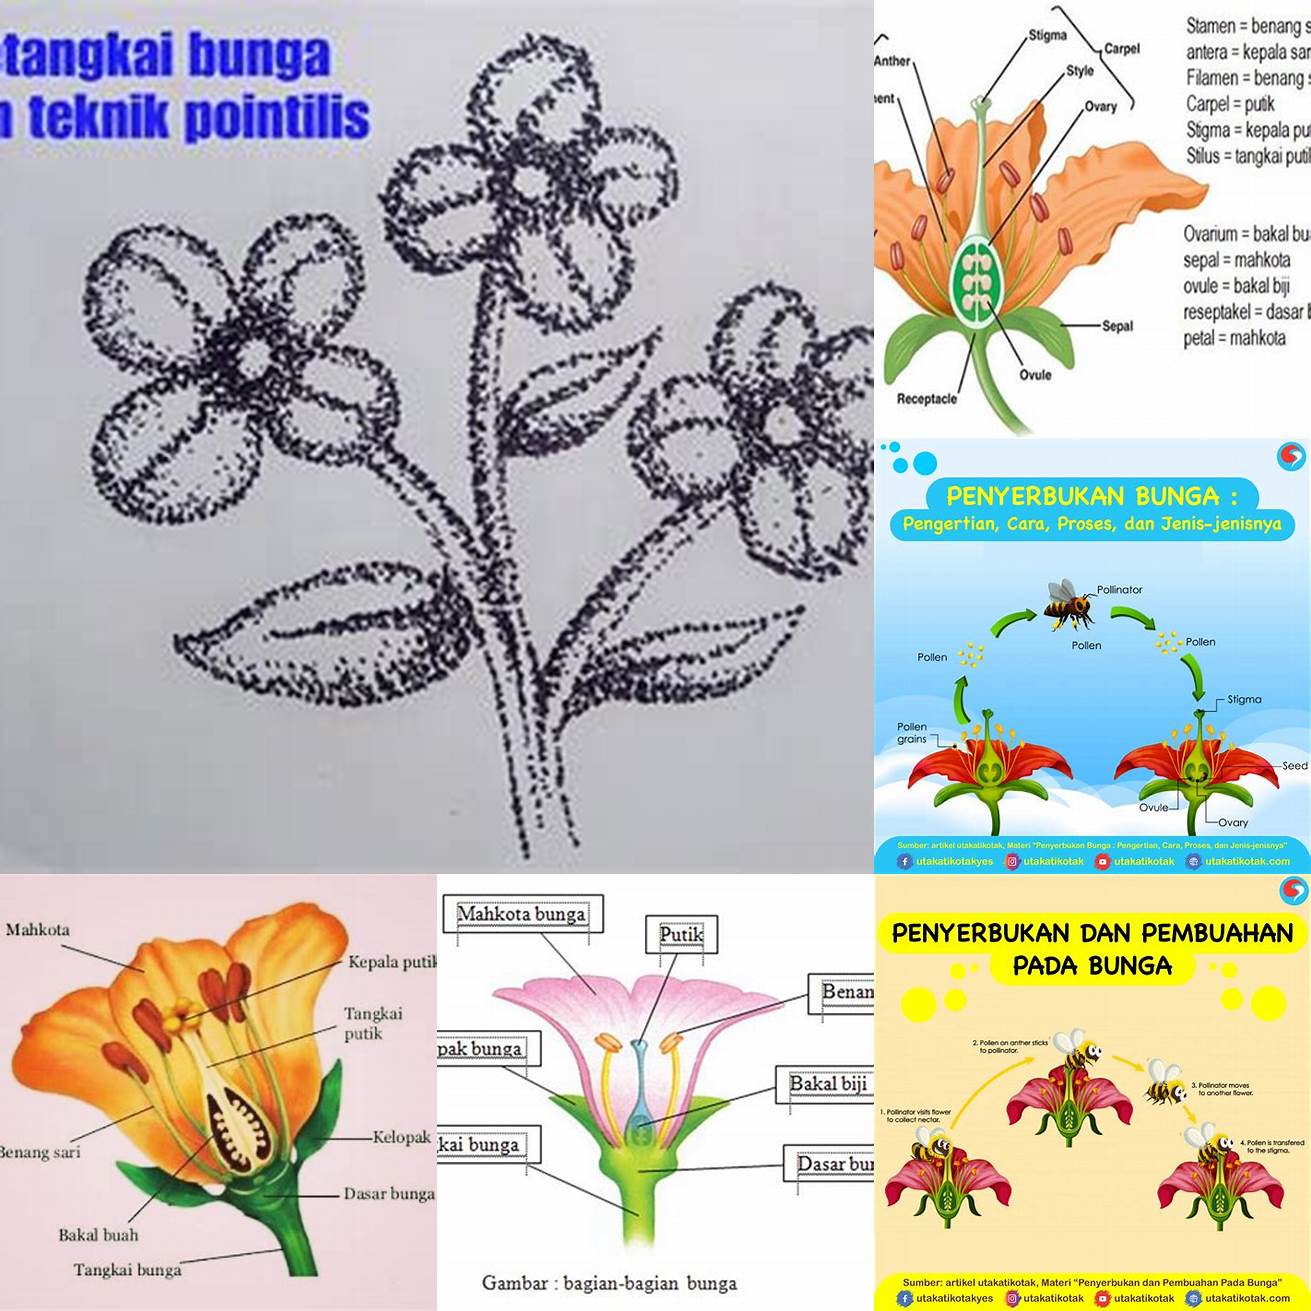 6 Emblem dengan gambar bunga atau tumbuhan